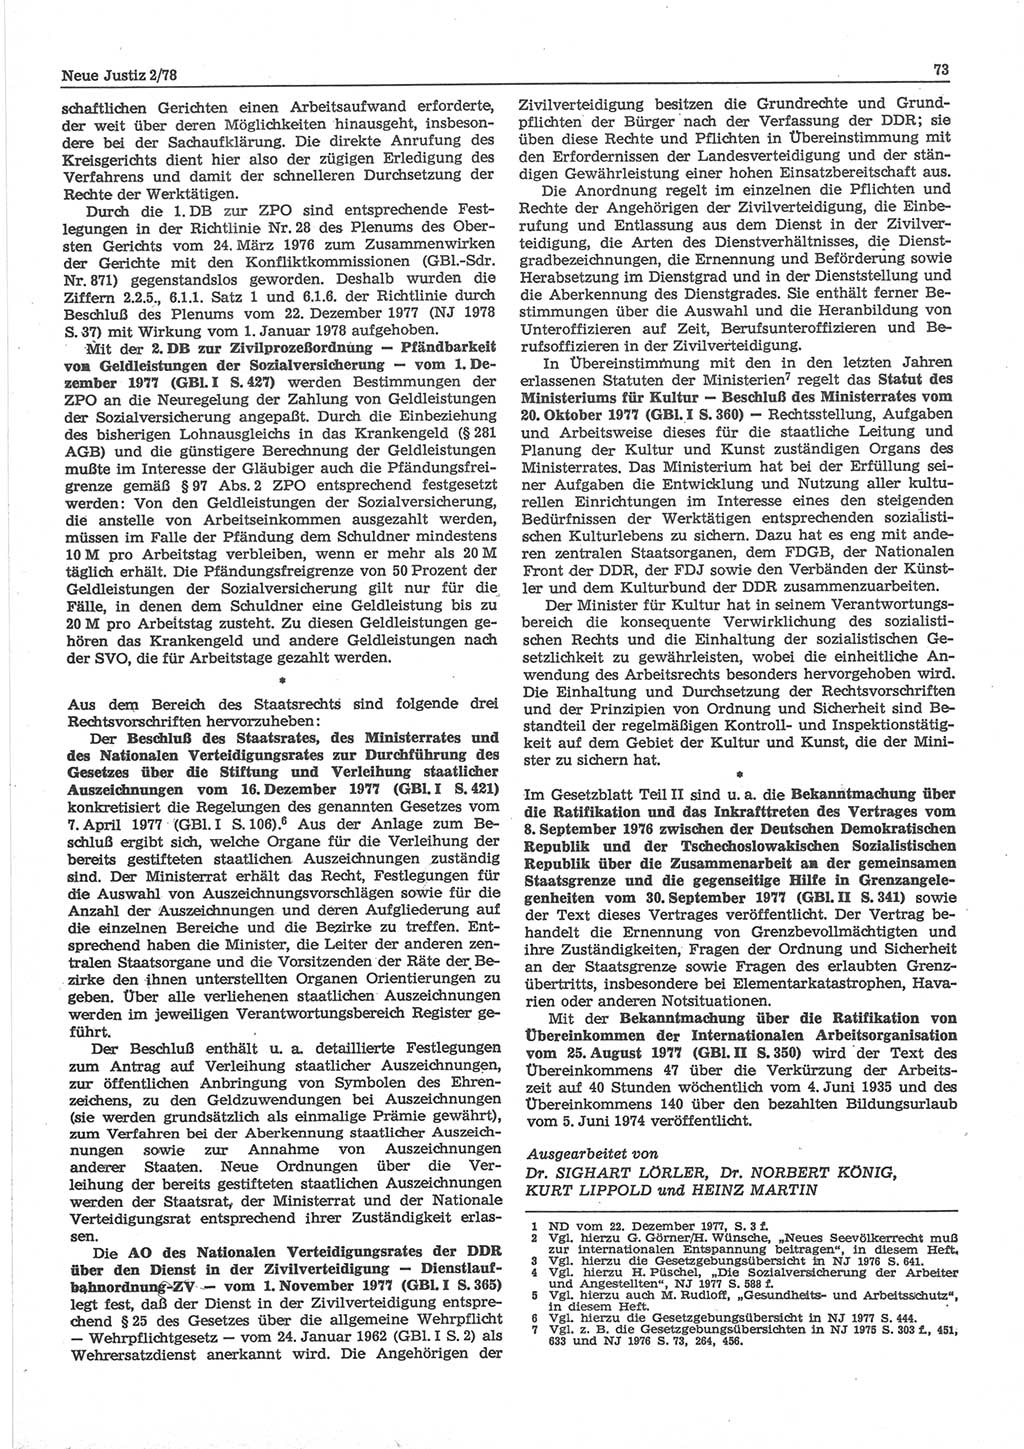 Neue Justiz (NJ), Zeitschrift für sozialistisches Recht und Gesetzlichkeit [Deutsche Demokratische Republik (DDR)], 32. Jahrgang 1978, Seite 73 (NJ DDR 1978, S. 73)